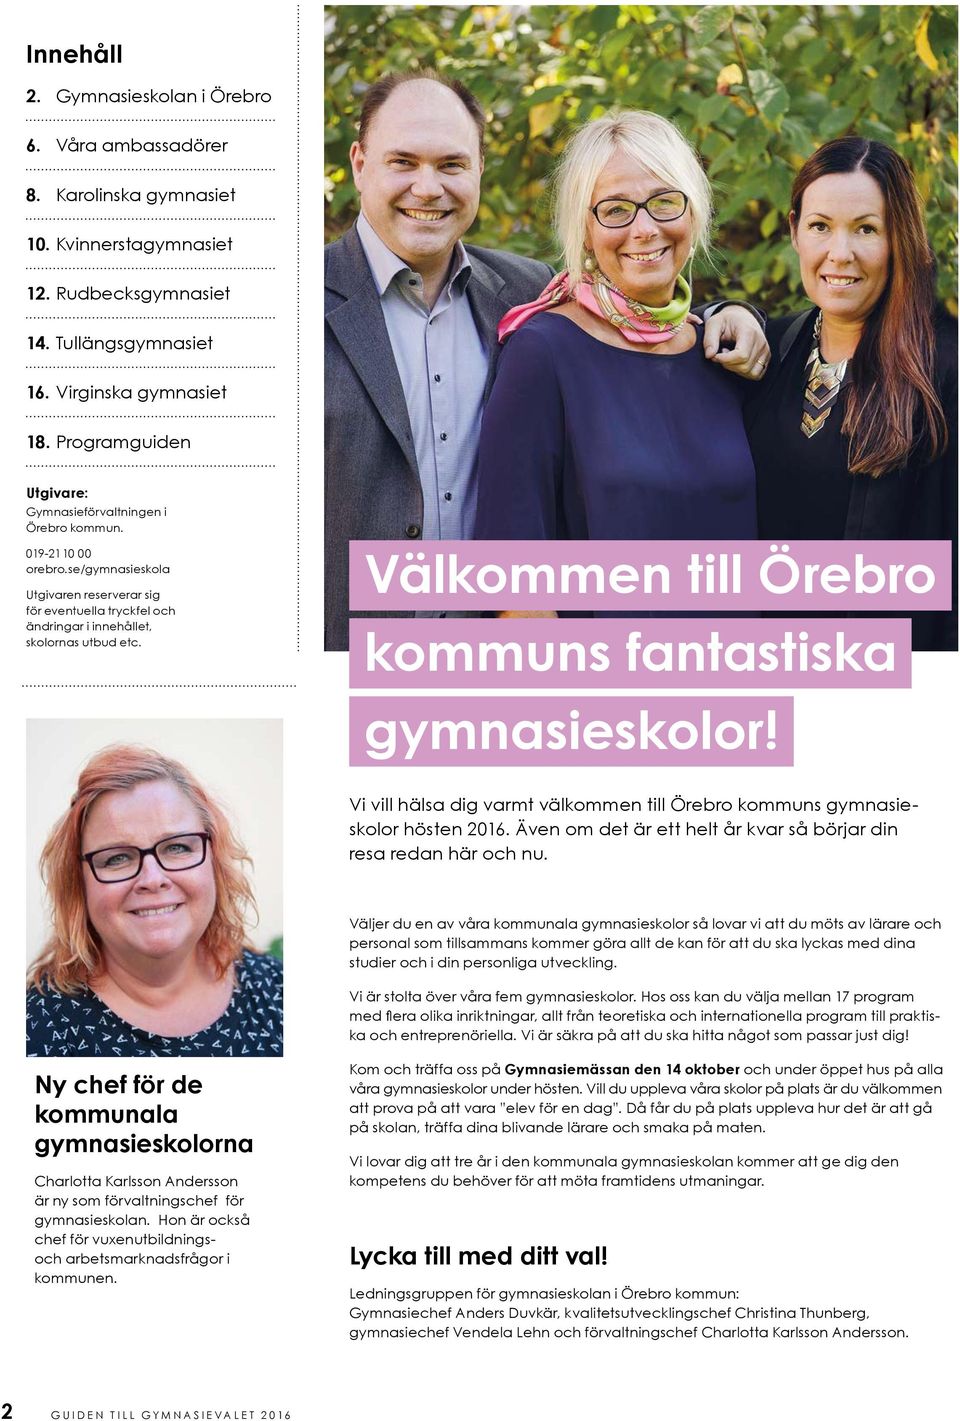 Välkommen till Örebro kommuns fantastiska gymnasieskolor! Vi vill hälsa dig varmt välkommen till Örebro kommuns gymnasieskolor hösten 2016.